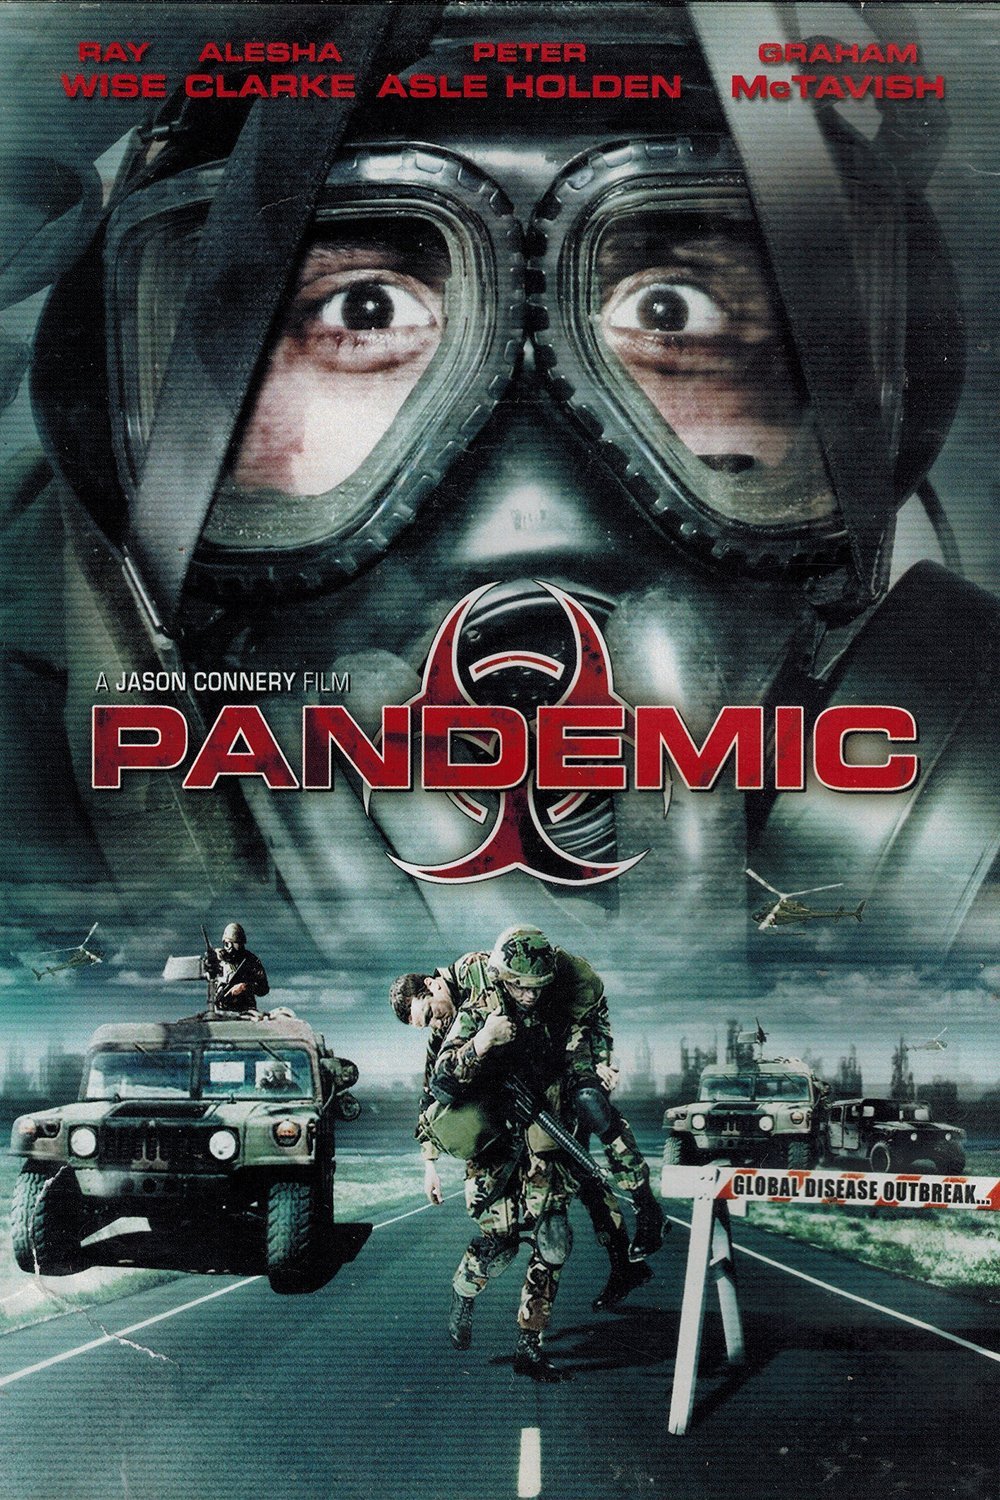 L'affiche du film Pandemic